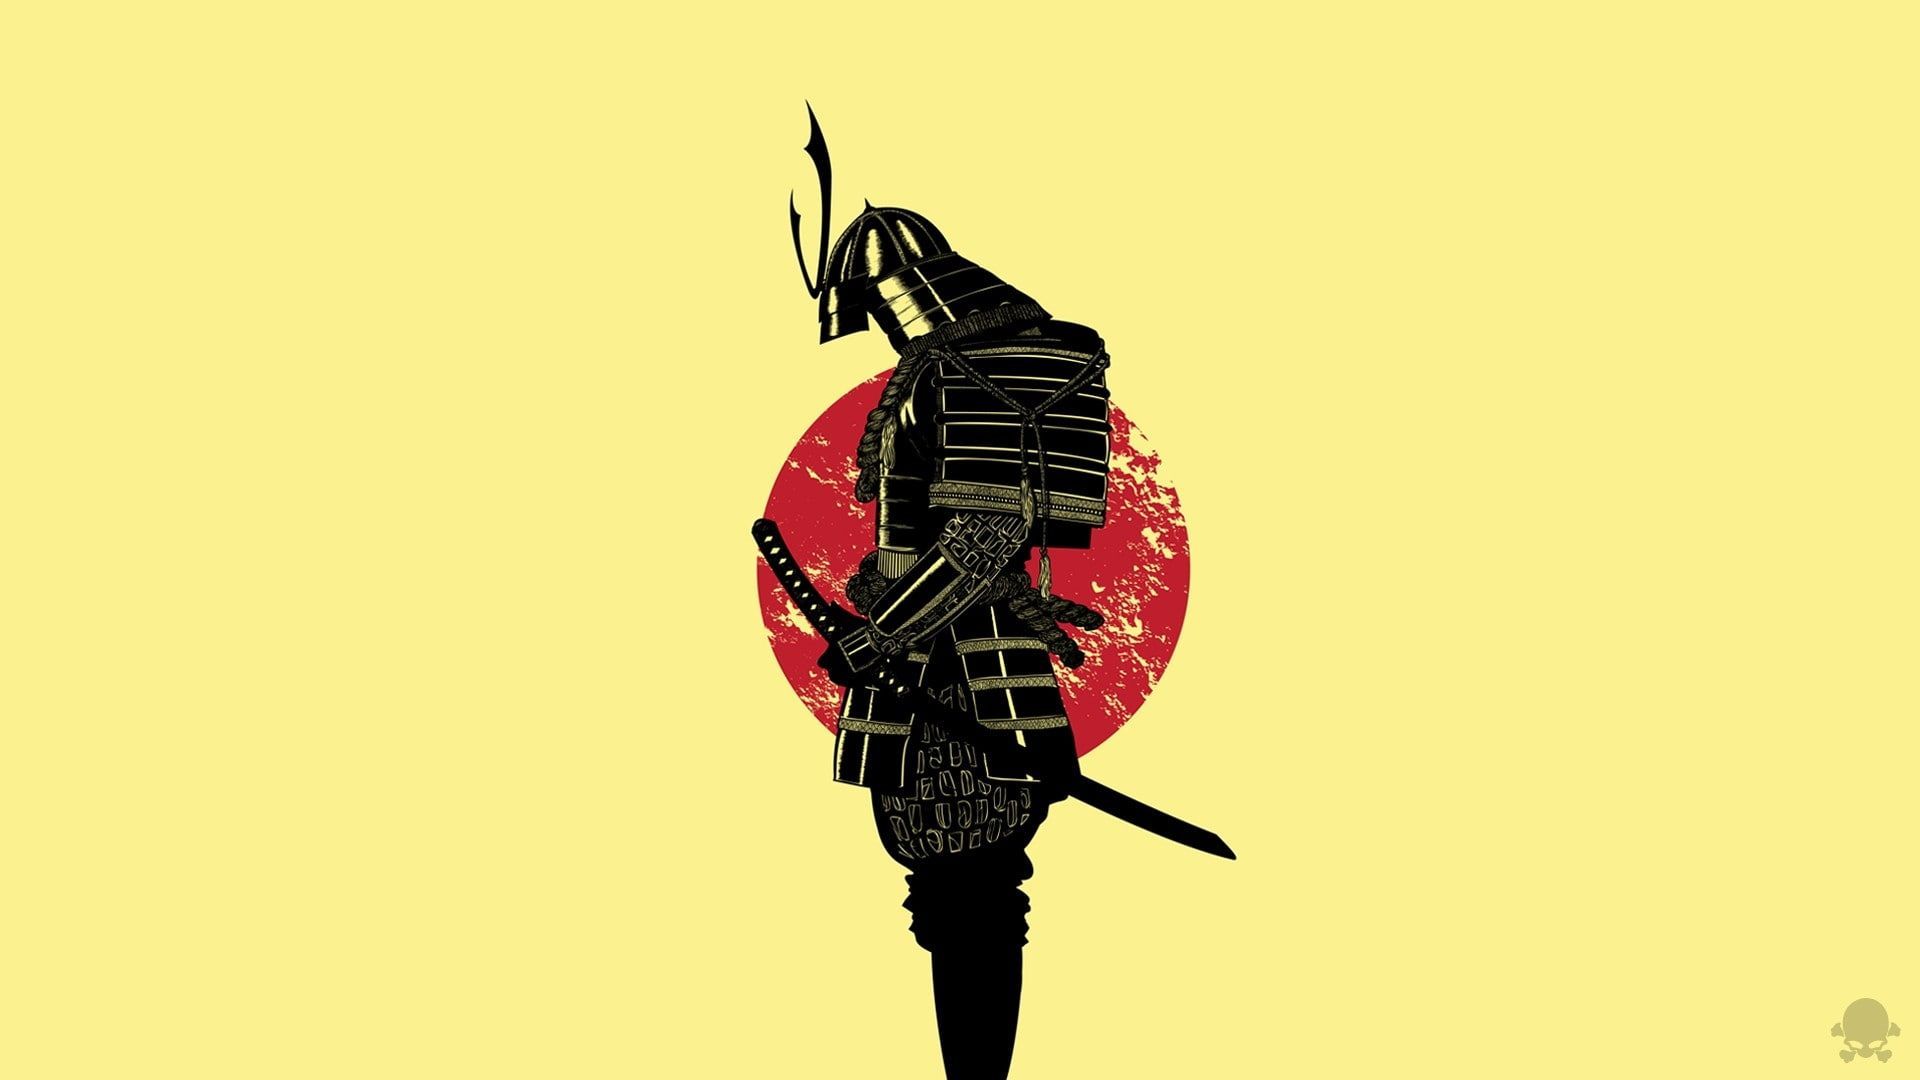 culture #japanese #ninja #samurai #sword #culture #japanese #ninja #samurai #sword P #wallpaper. Samurai wallpaper, Warriors wallpaper, Japanese art samurai